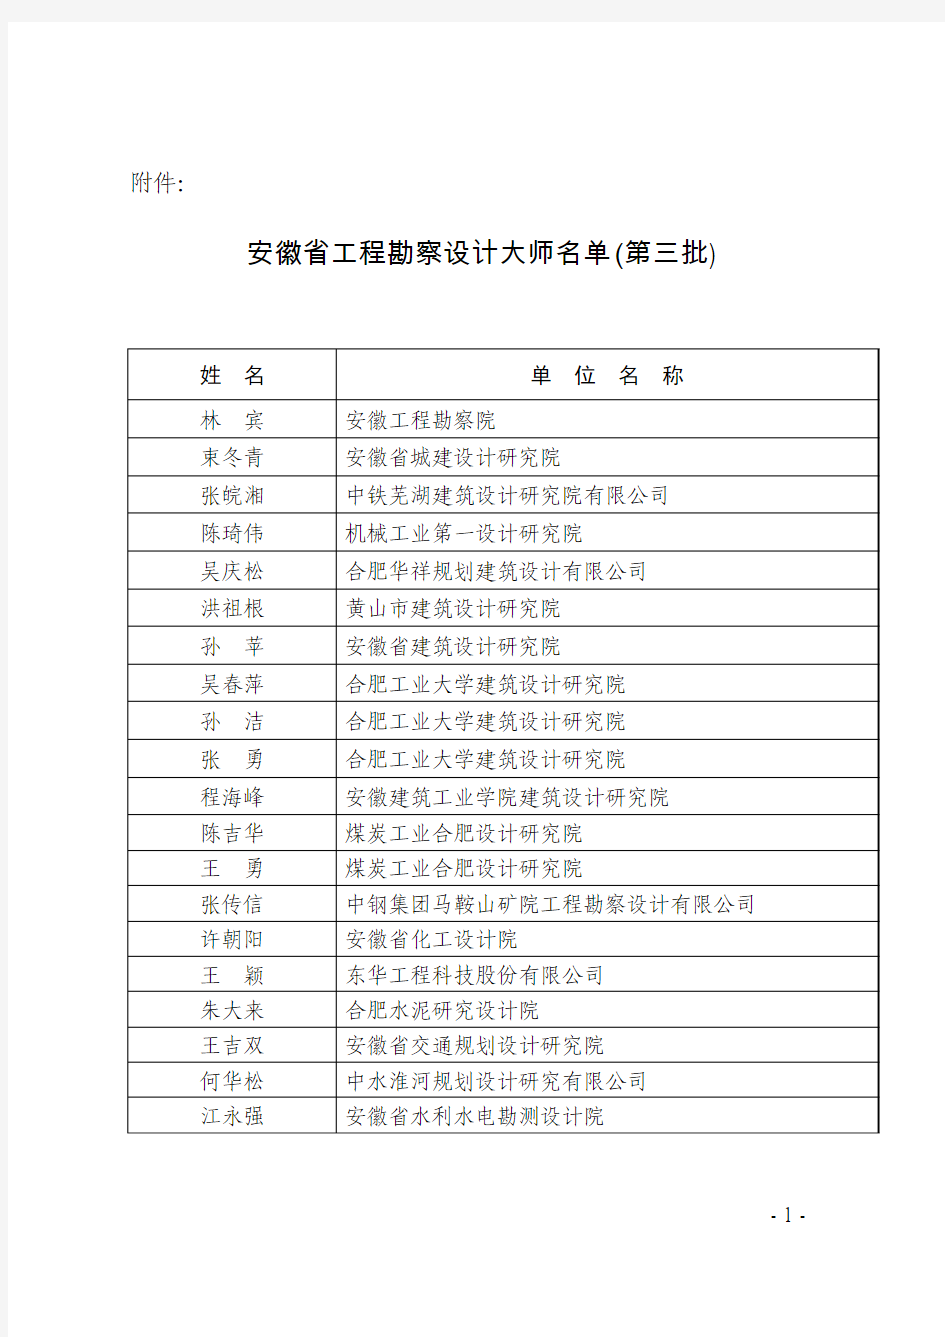 安徽省工程勘察设计大师名单(第三批